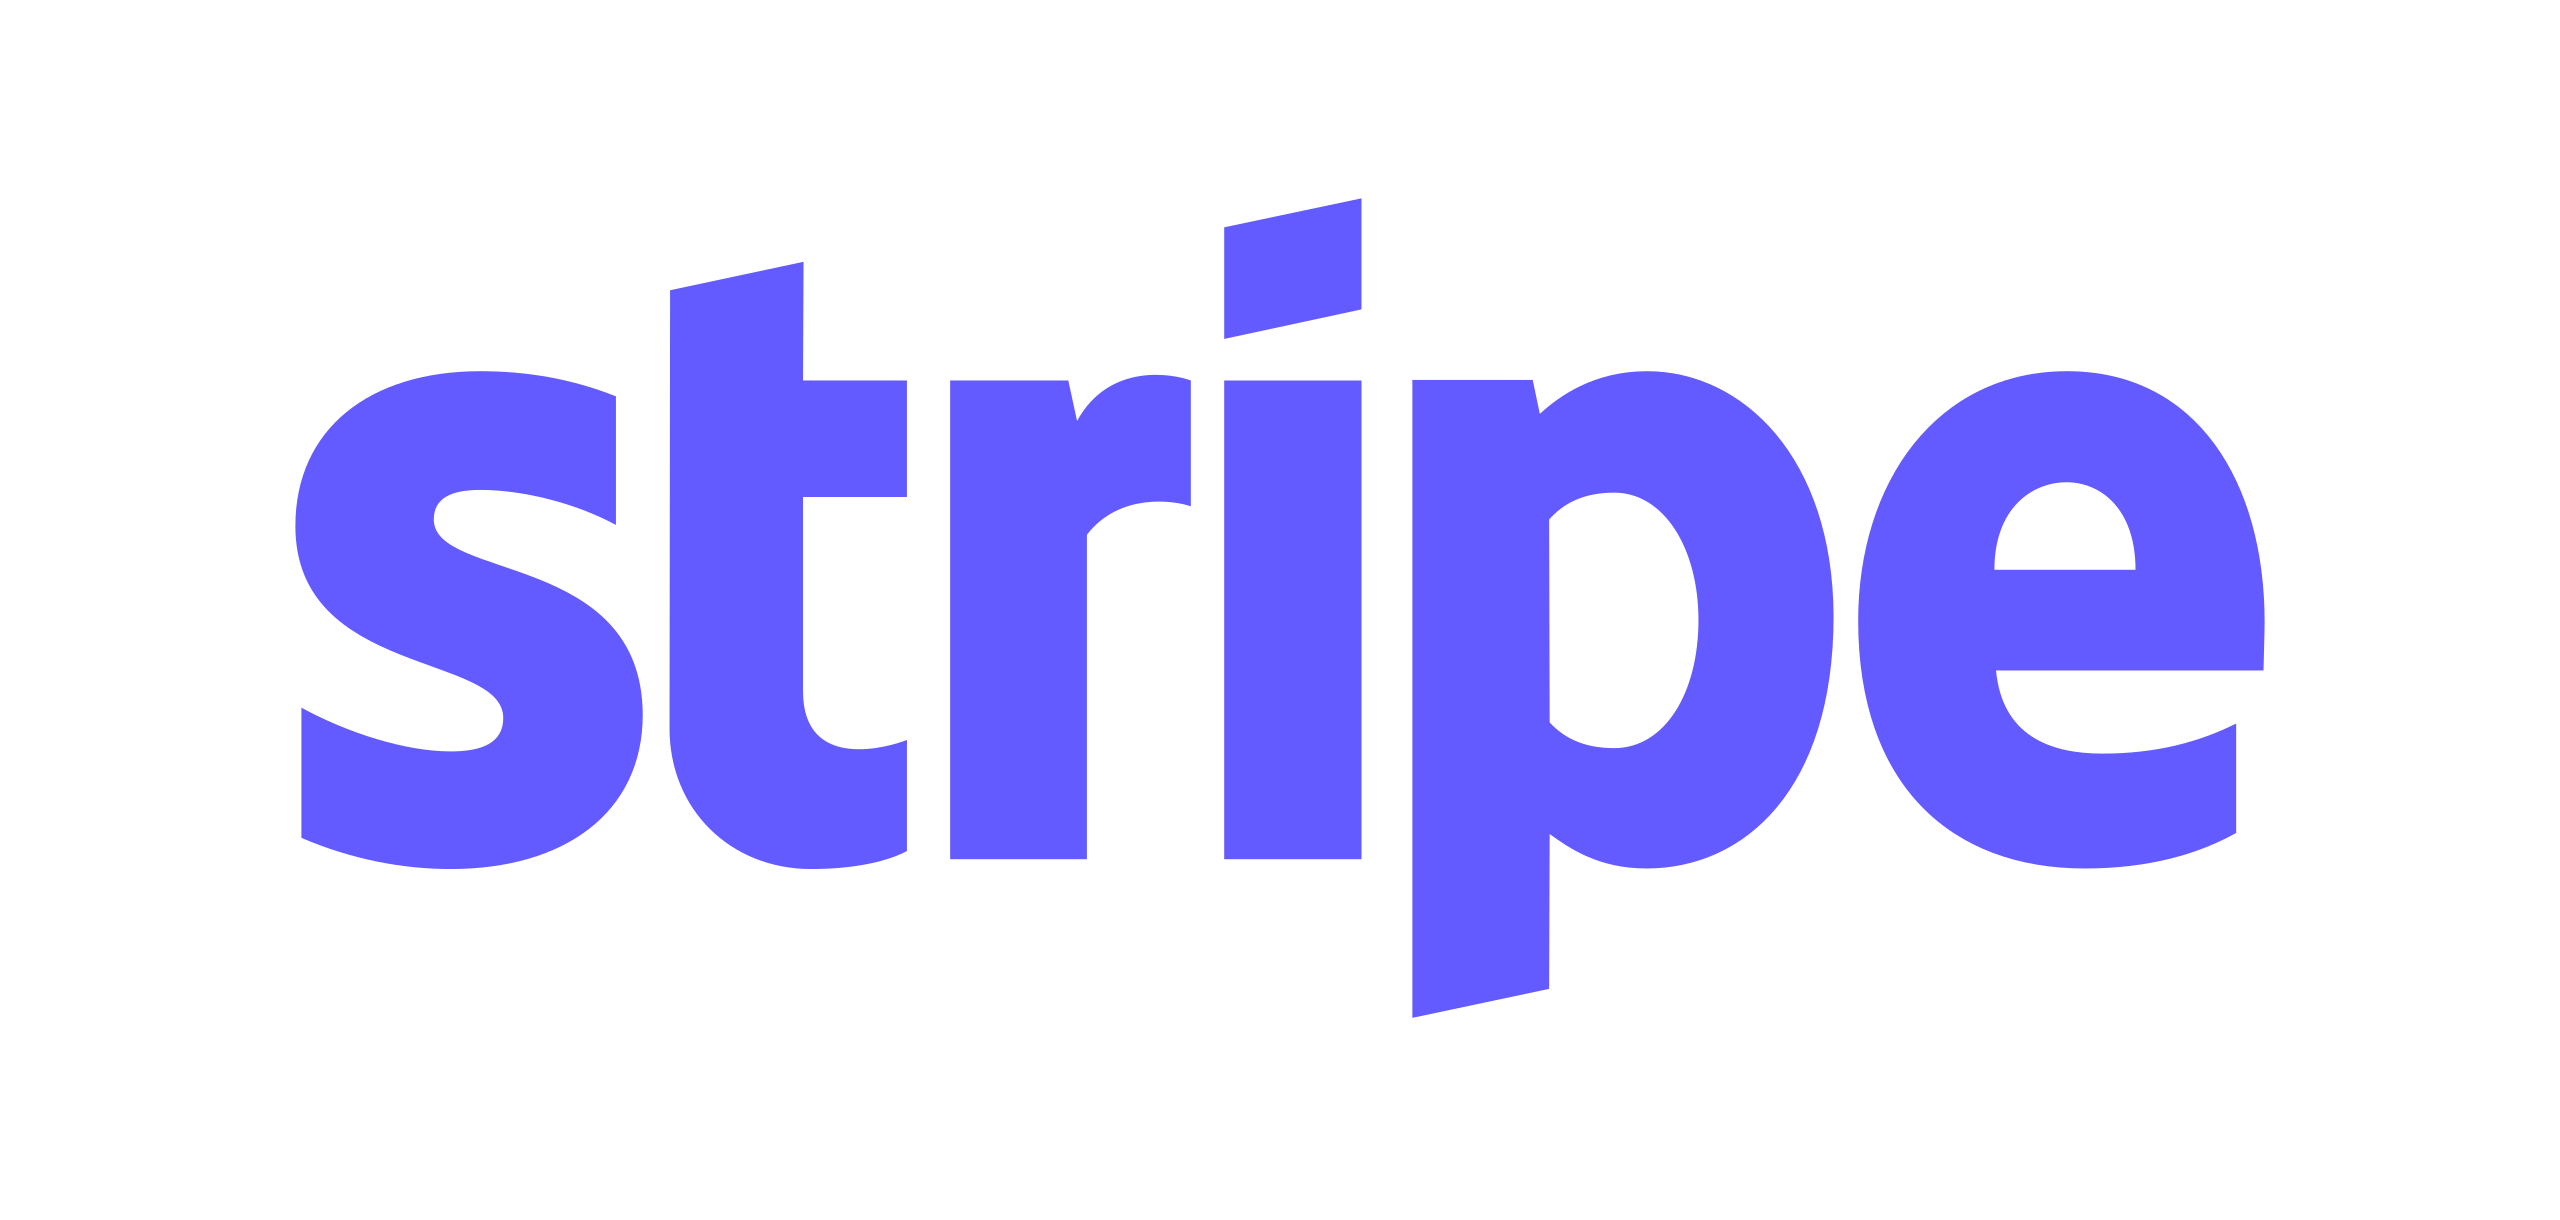 Logo for Stripe